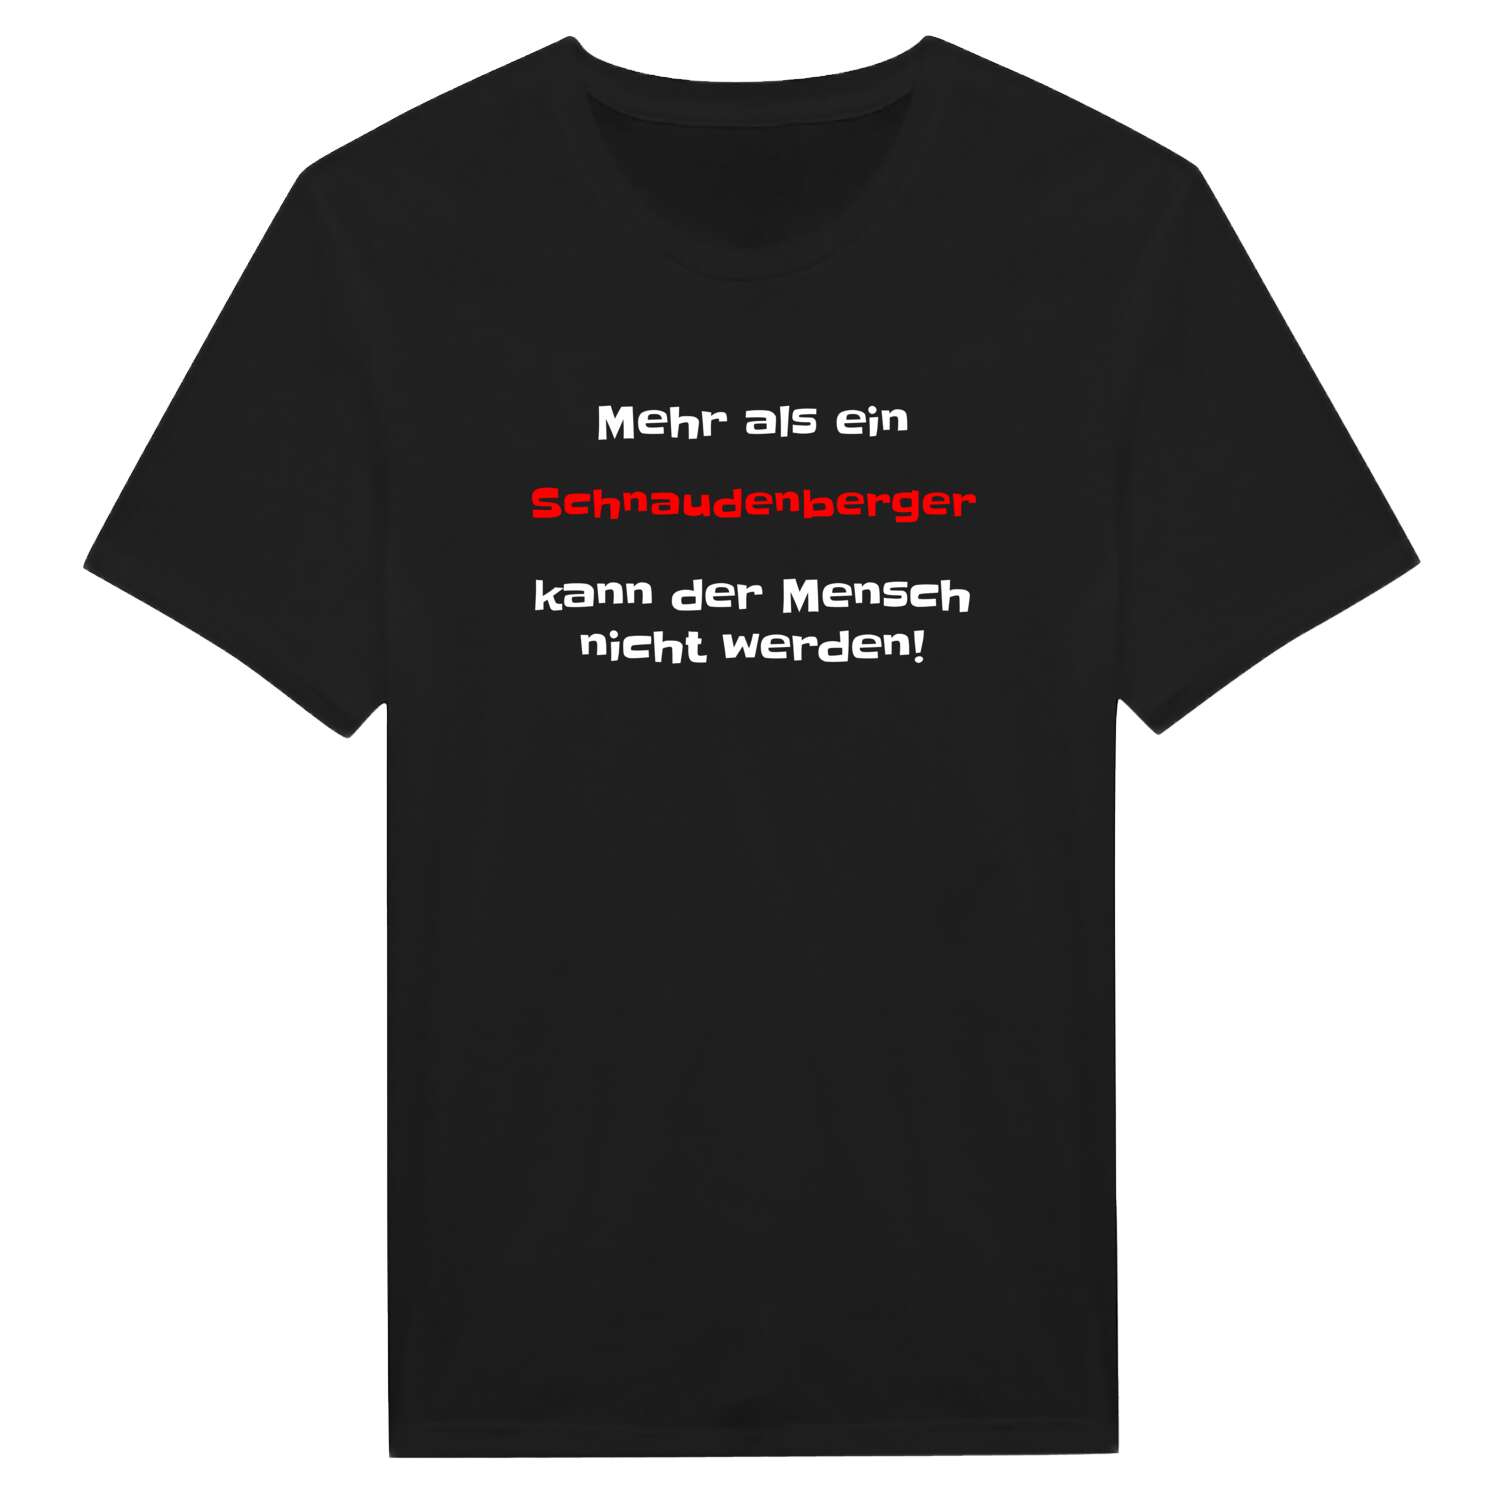 Schnaudenberg T-Shirt »Mehr als ein«